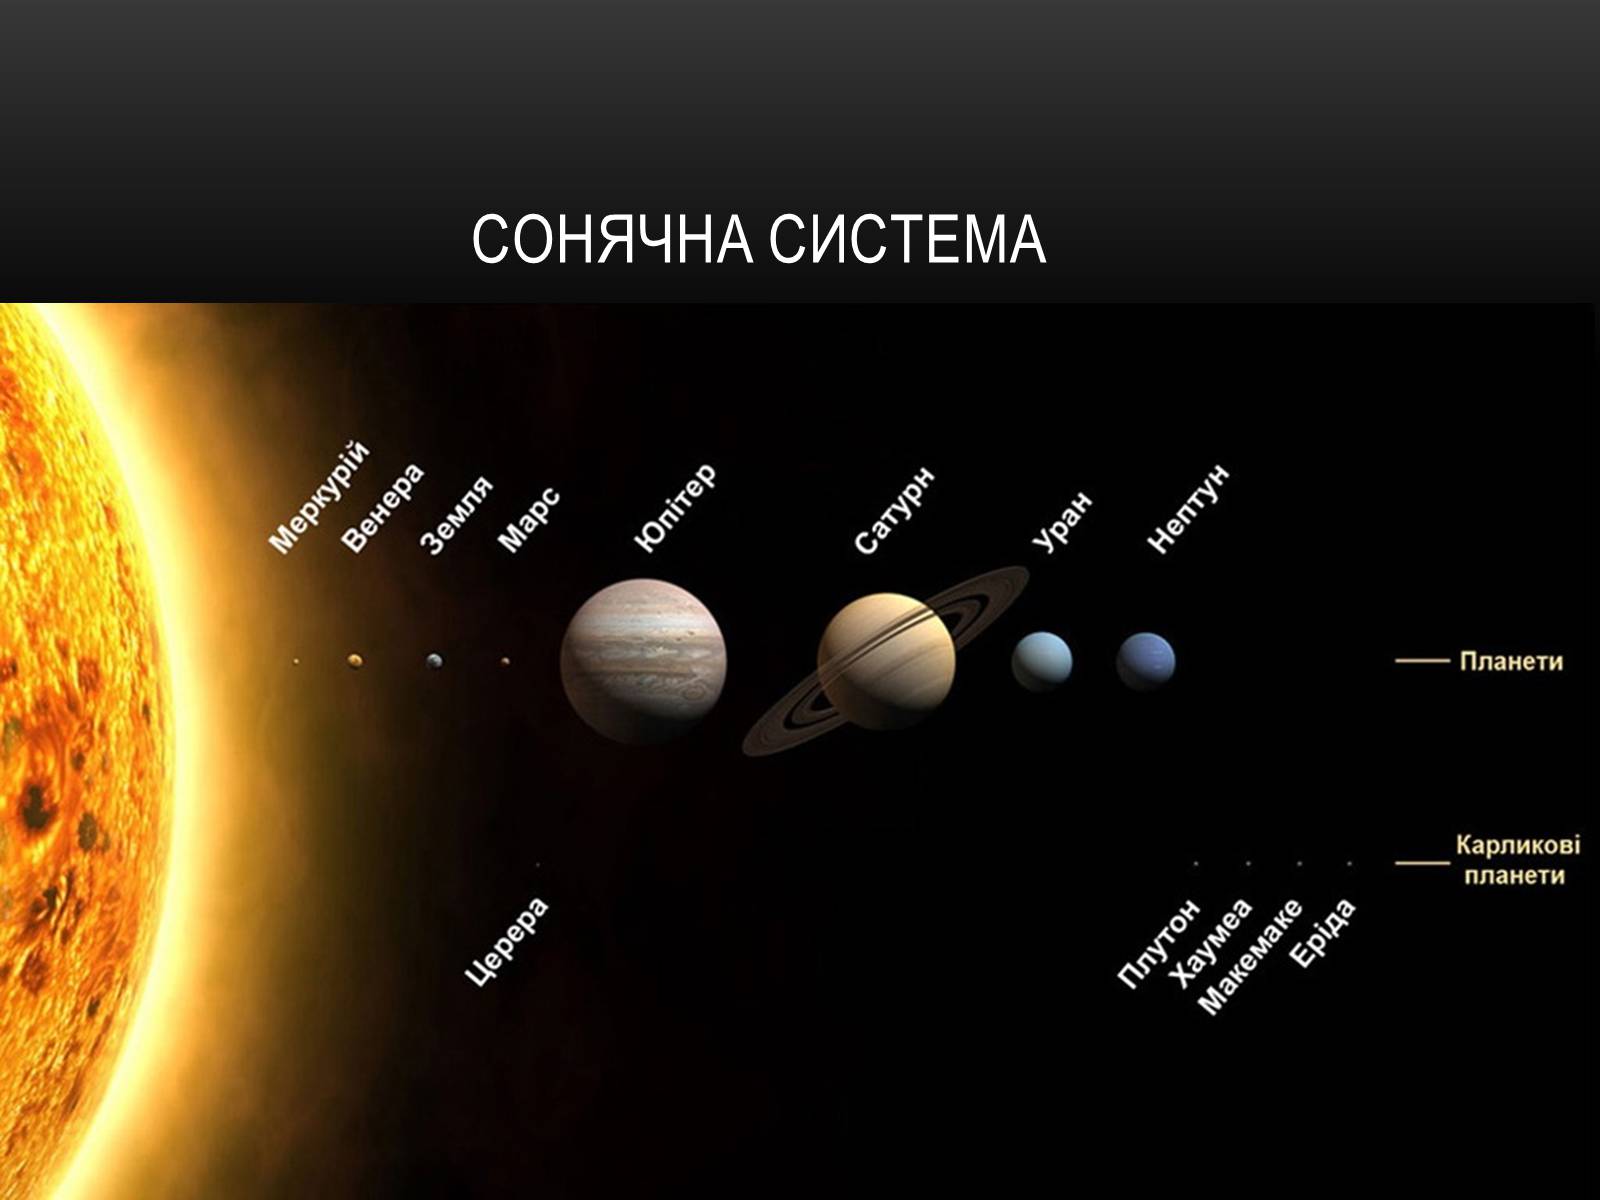 Сколько классов планет. Транснептуновые объекты солнечной системы Карликовые планеты. Схема солнечной системы с карликовыми планетами. Планеты солнечной системы с карликовыми планетами. Карликовые планеты солнечной системы по порядку.